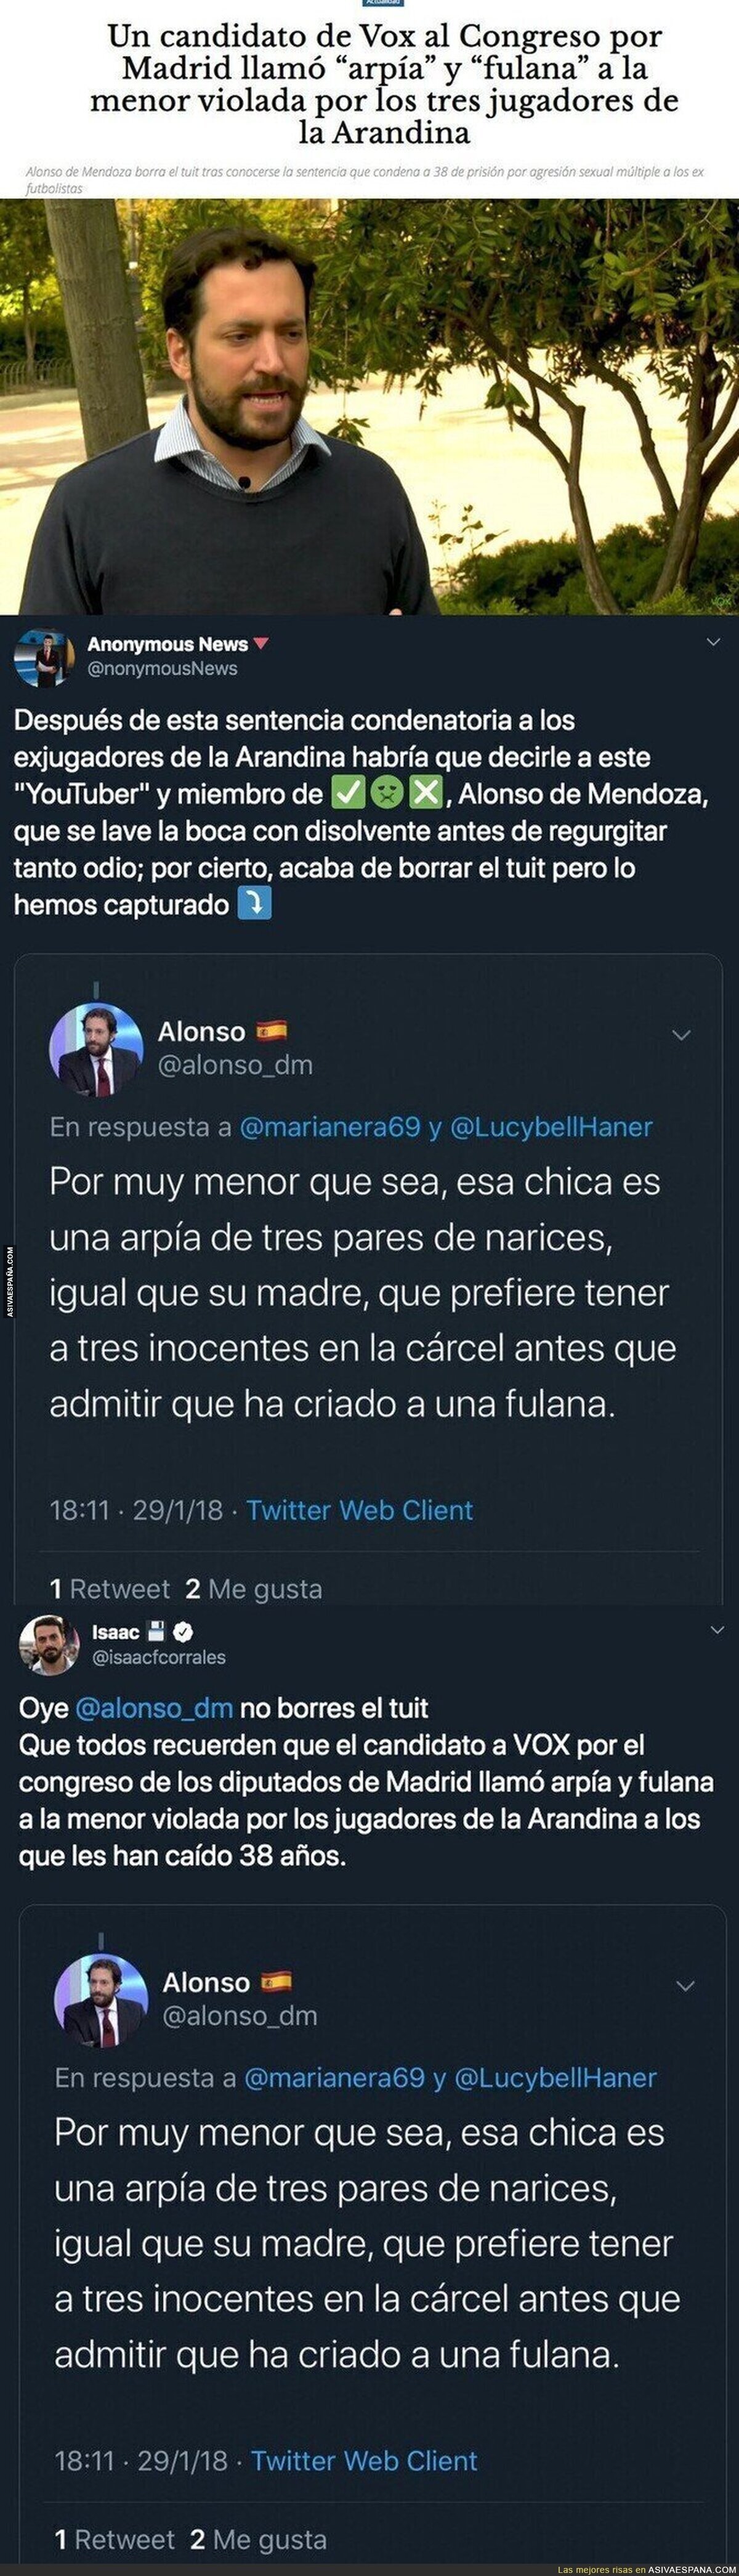 Este es el tuit del candidato de Vox al Congreso por Madrid que llamó “arpía” y “fulana” a la menor violada por los tres jugadores de la Arandina y que borró el tuit